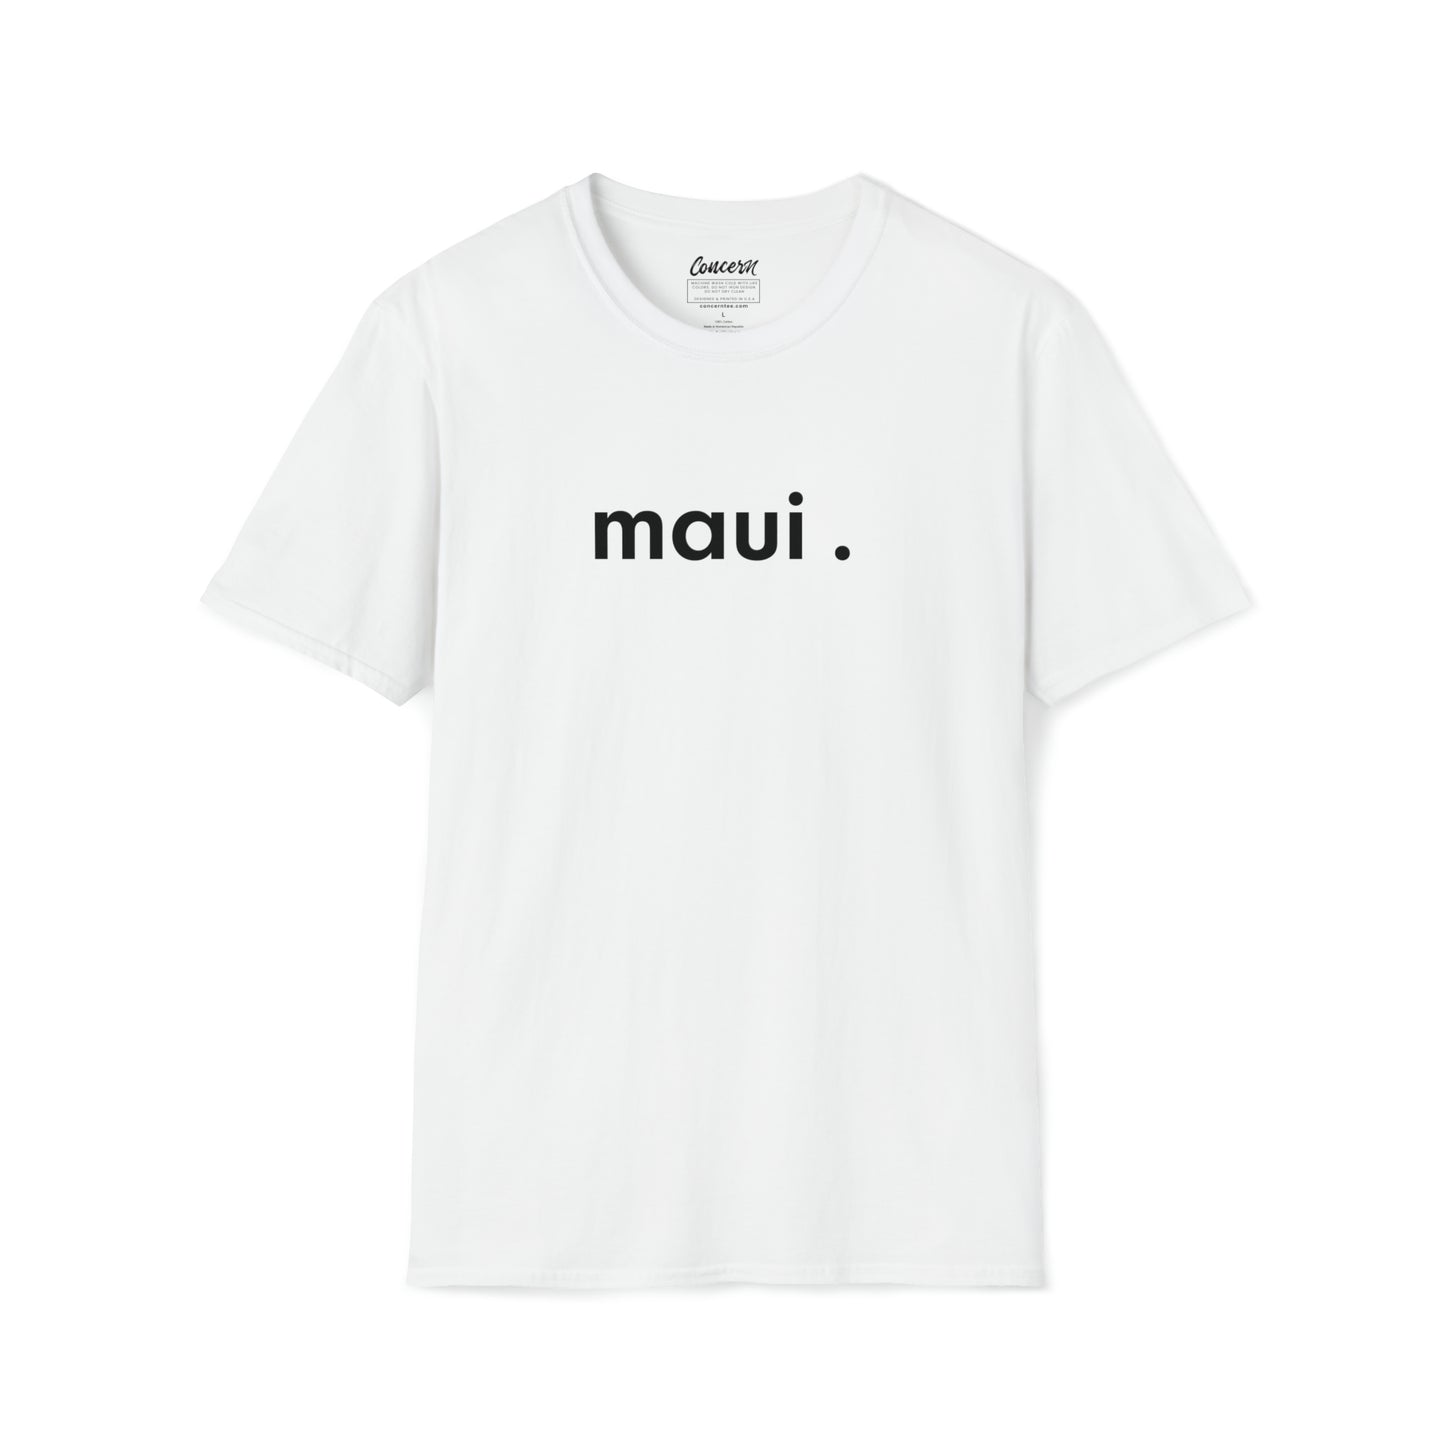 The Original Concern Maui T-Shirt